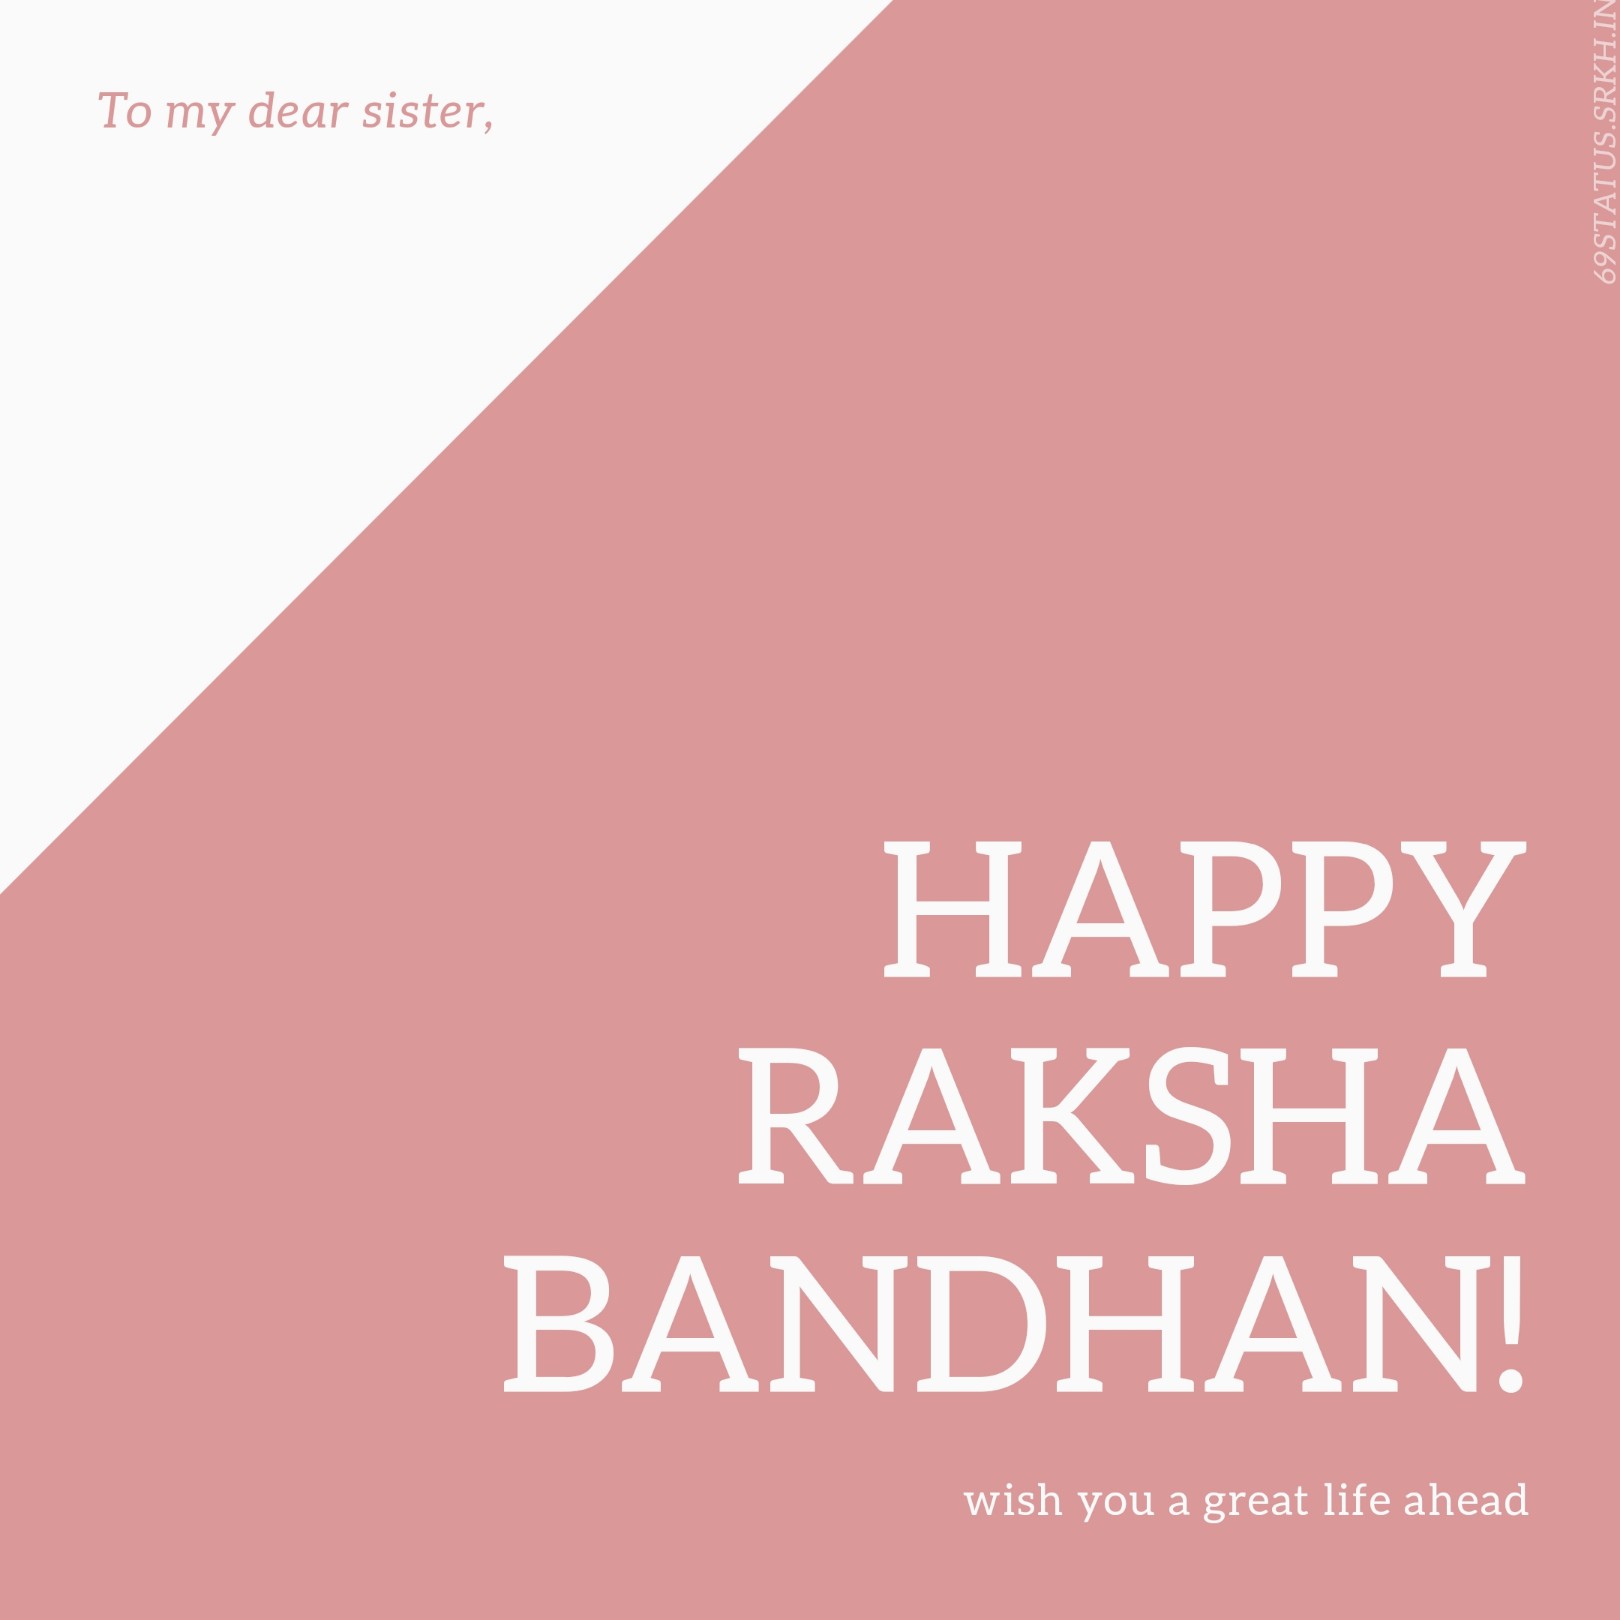 Raksha Bandhan Images in English for Sister